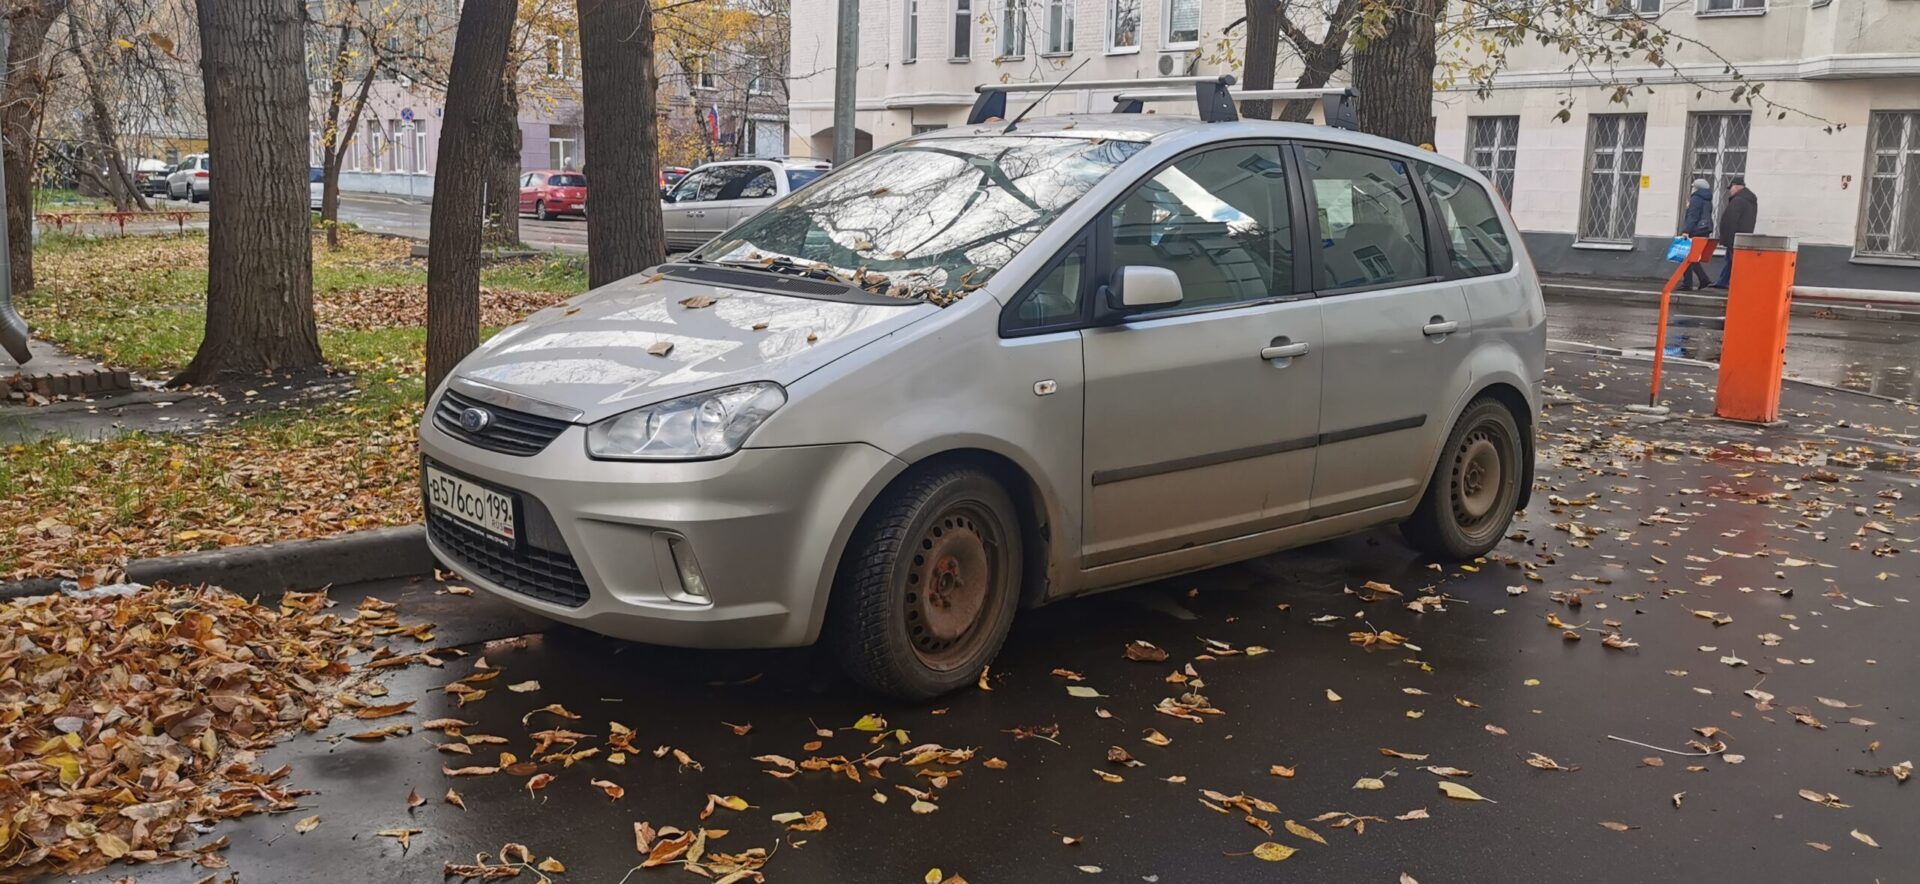 Автоэксперт Егор Васильев перечислил 7 признаков привлекающего инспекторов ДПС автомобиля